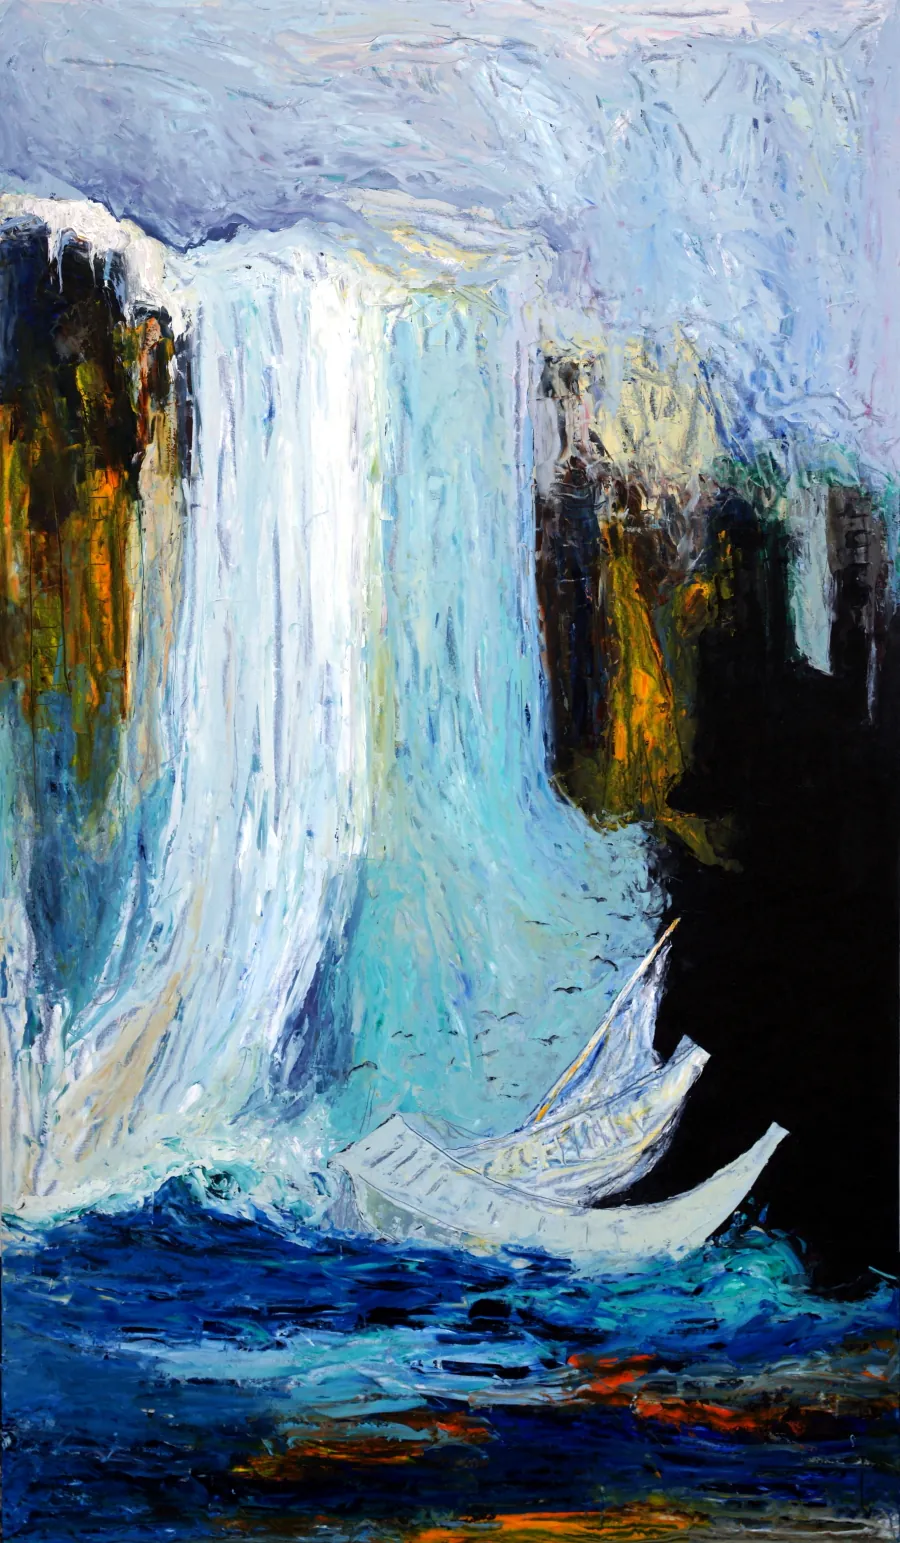 Downfall eller Nemesis er malet på en træplade. Billedet viser et vandfald med sorte fugle, der kredser omkring et stort mørkt gab